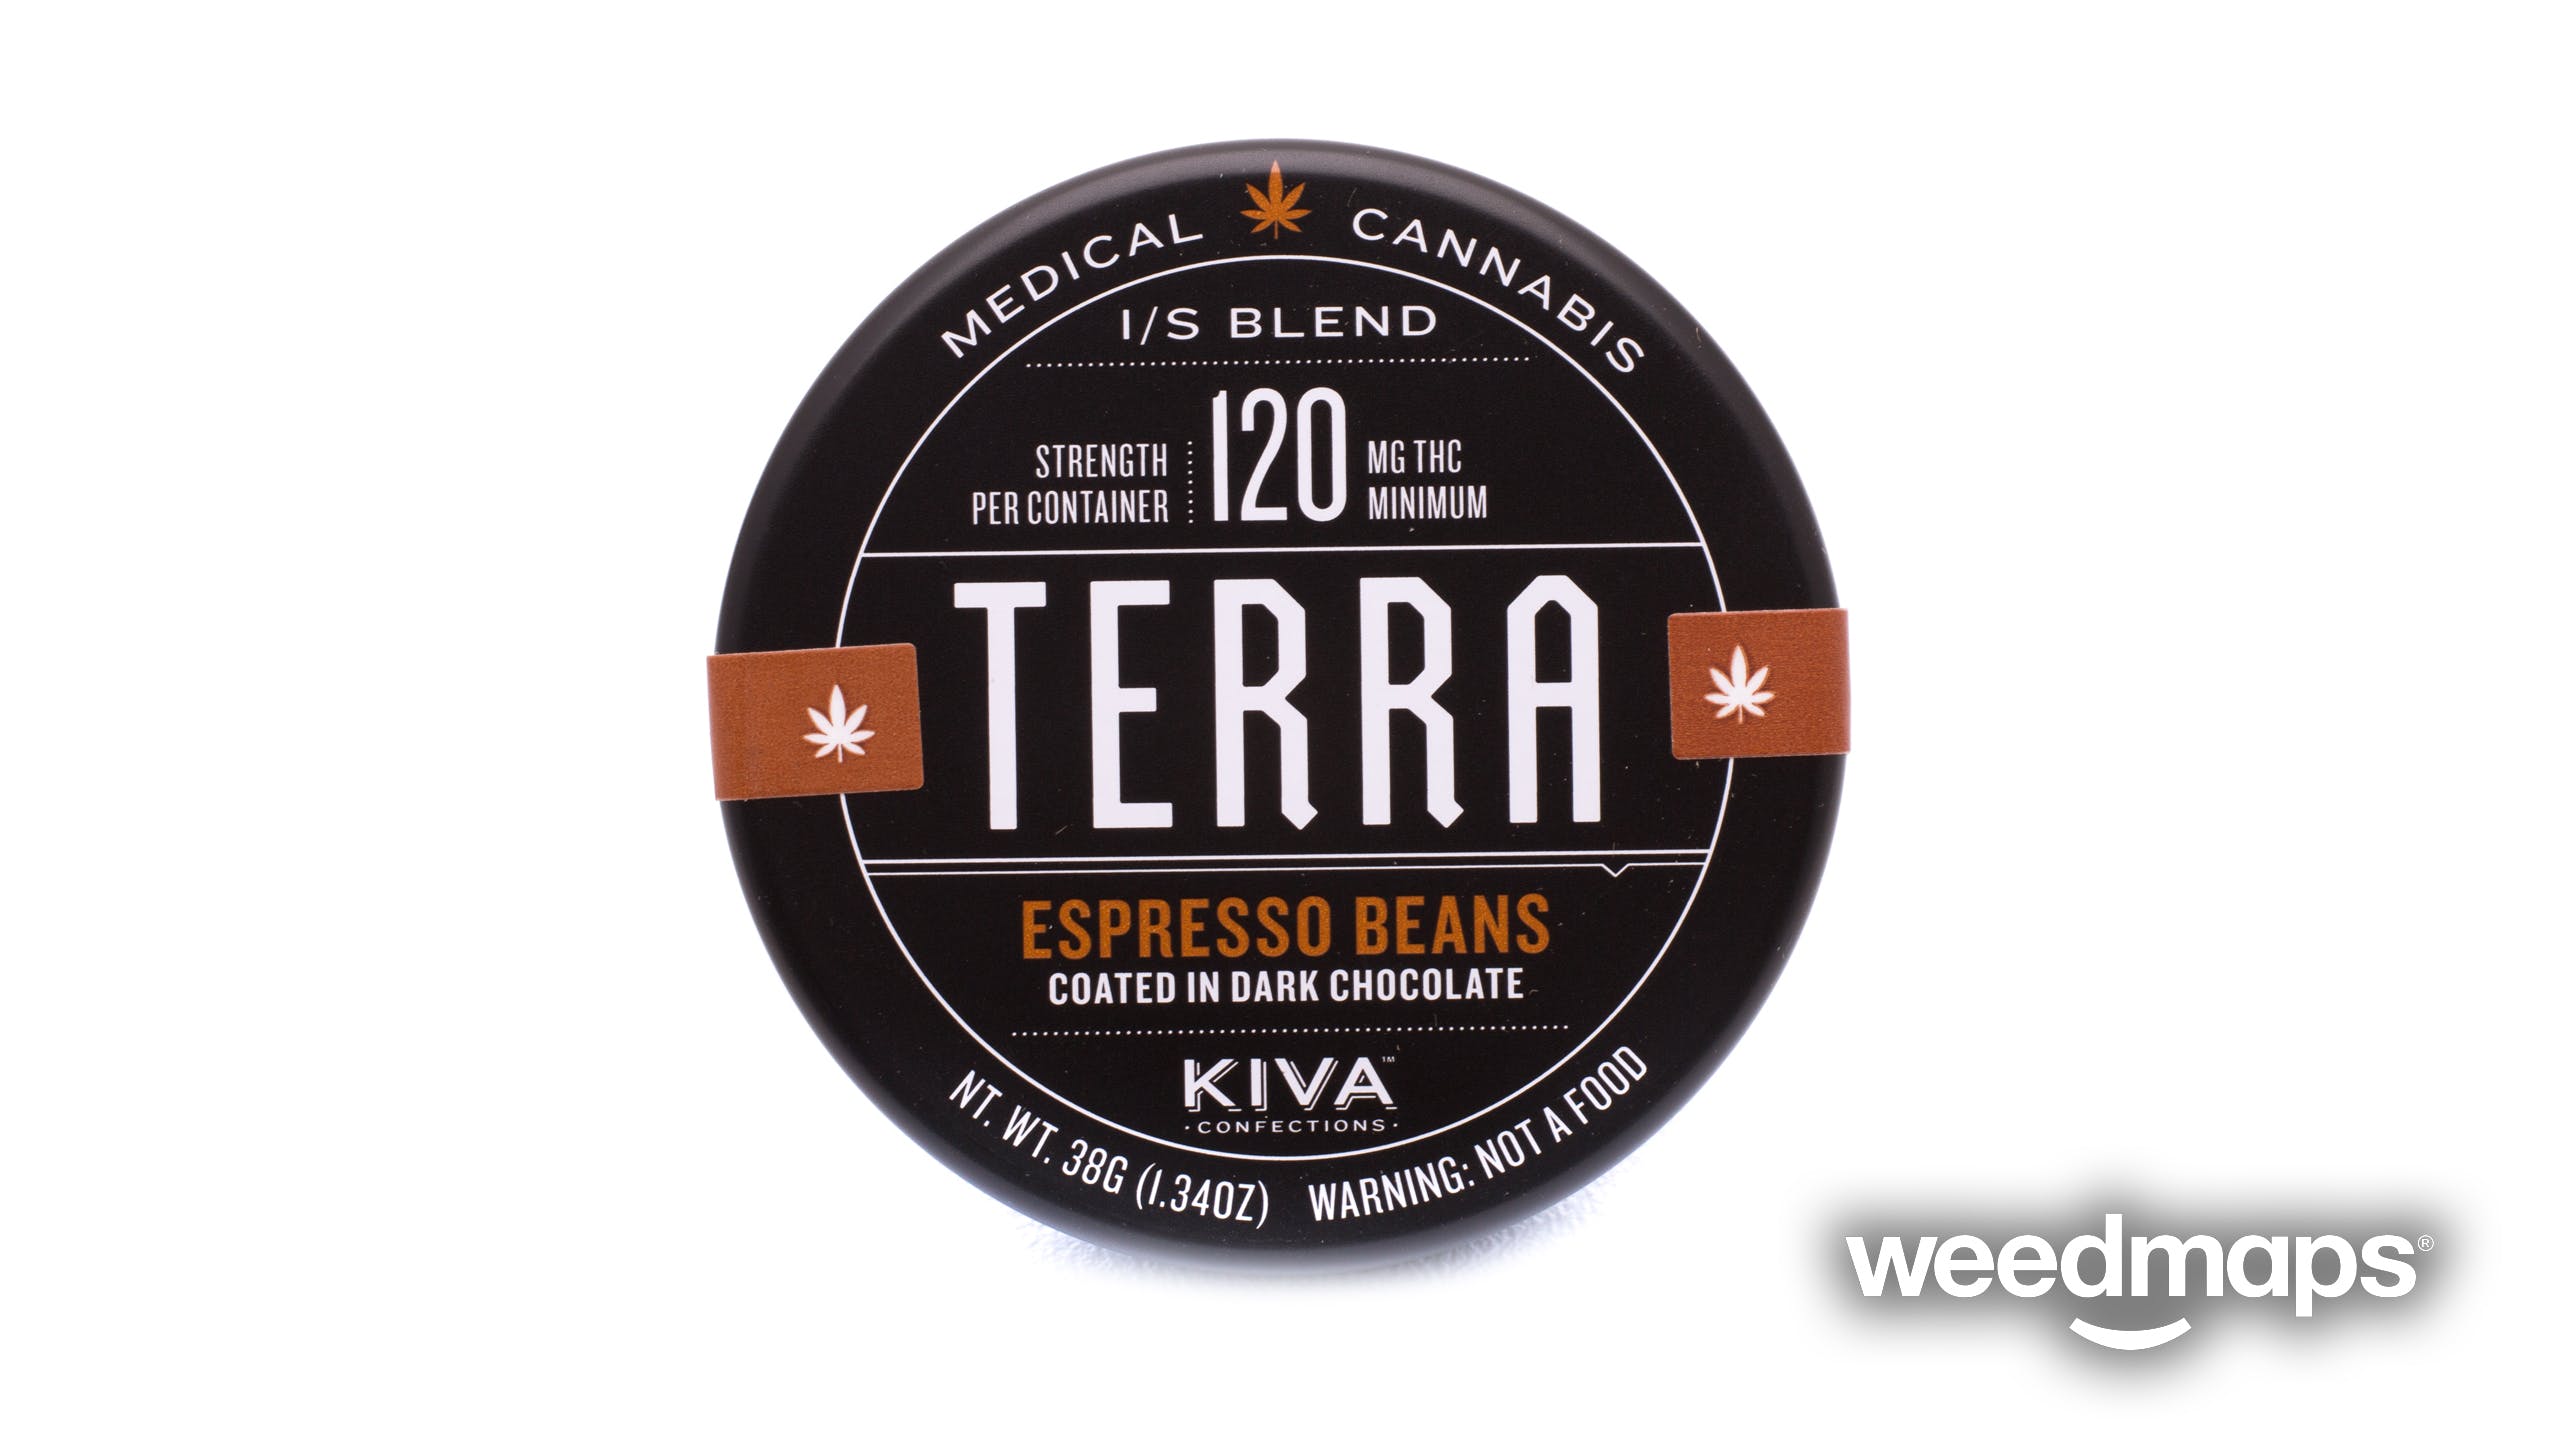 edible-terra-bites-espresso-beans-kiva-confections